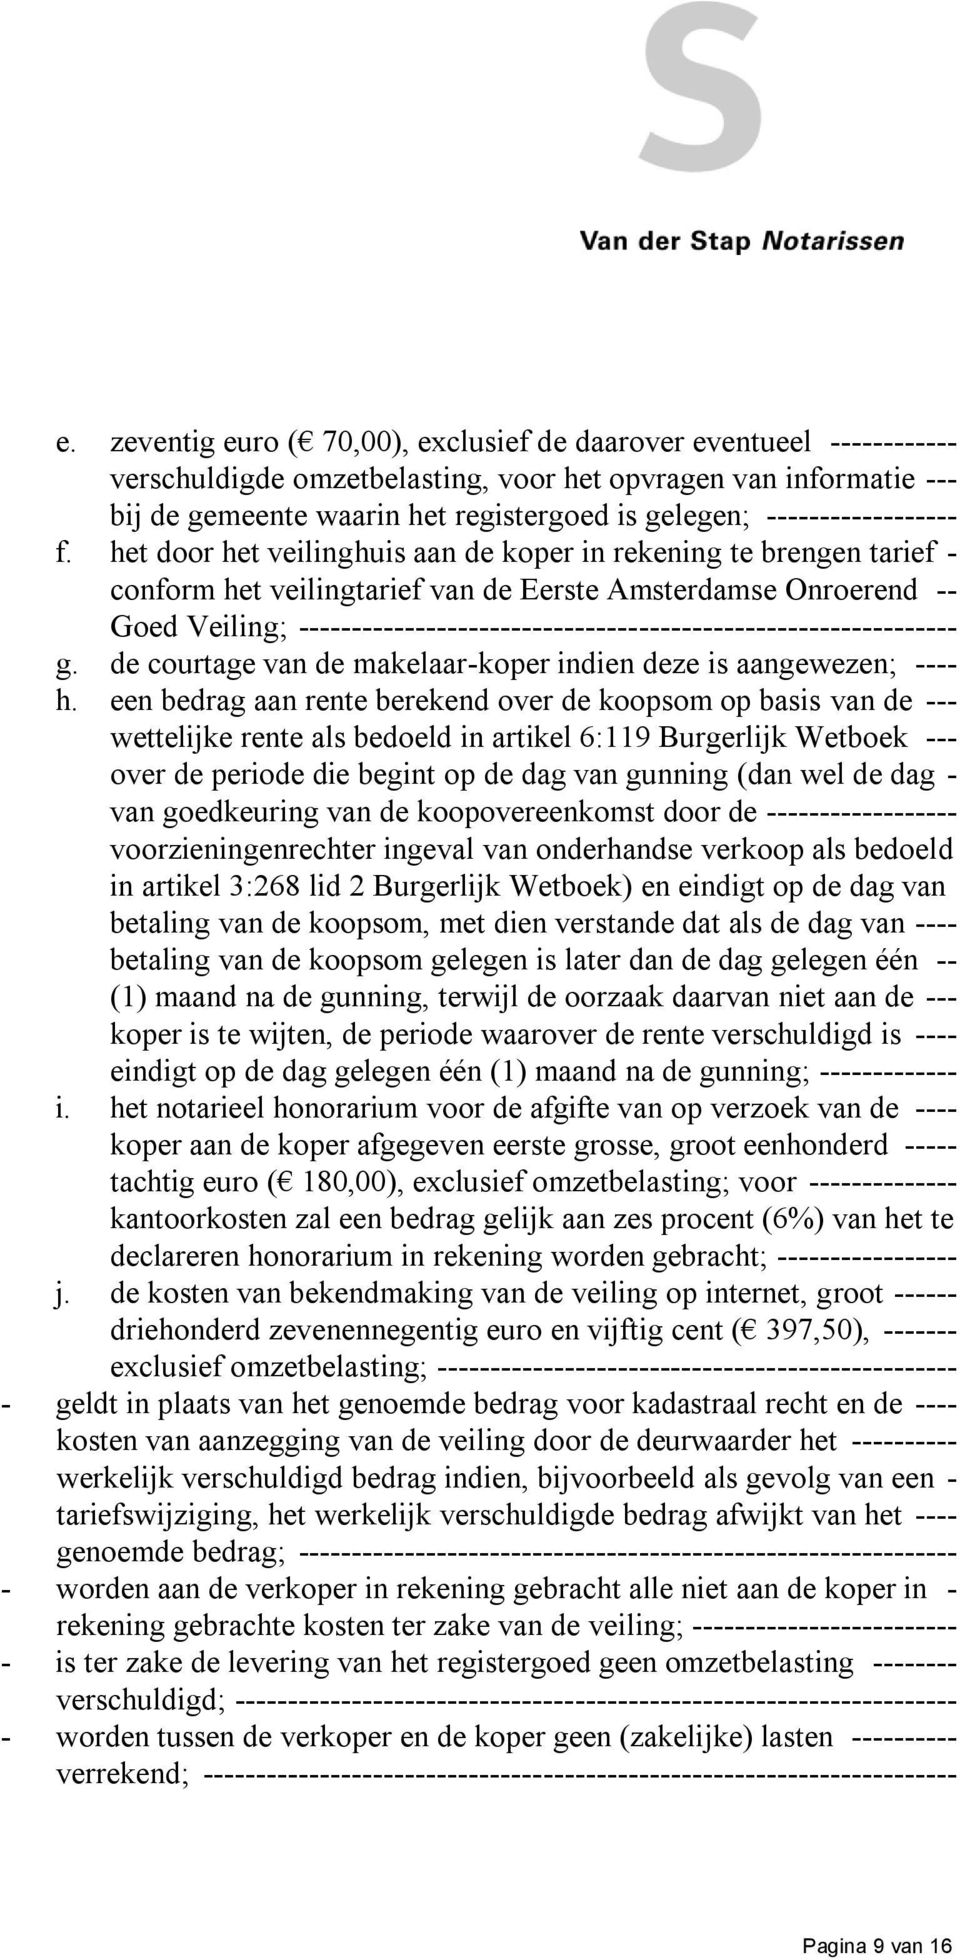 het door het veilinghuis aan de koper in rekening te brengen tarief - conform het veilingtarief van de Eerste Amsterdamse Onroerend -- Goed Veiling;